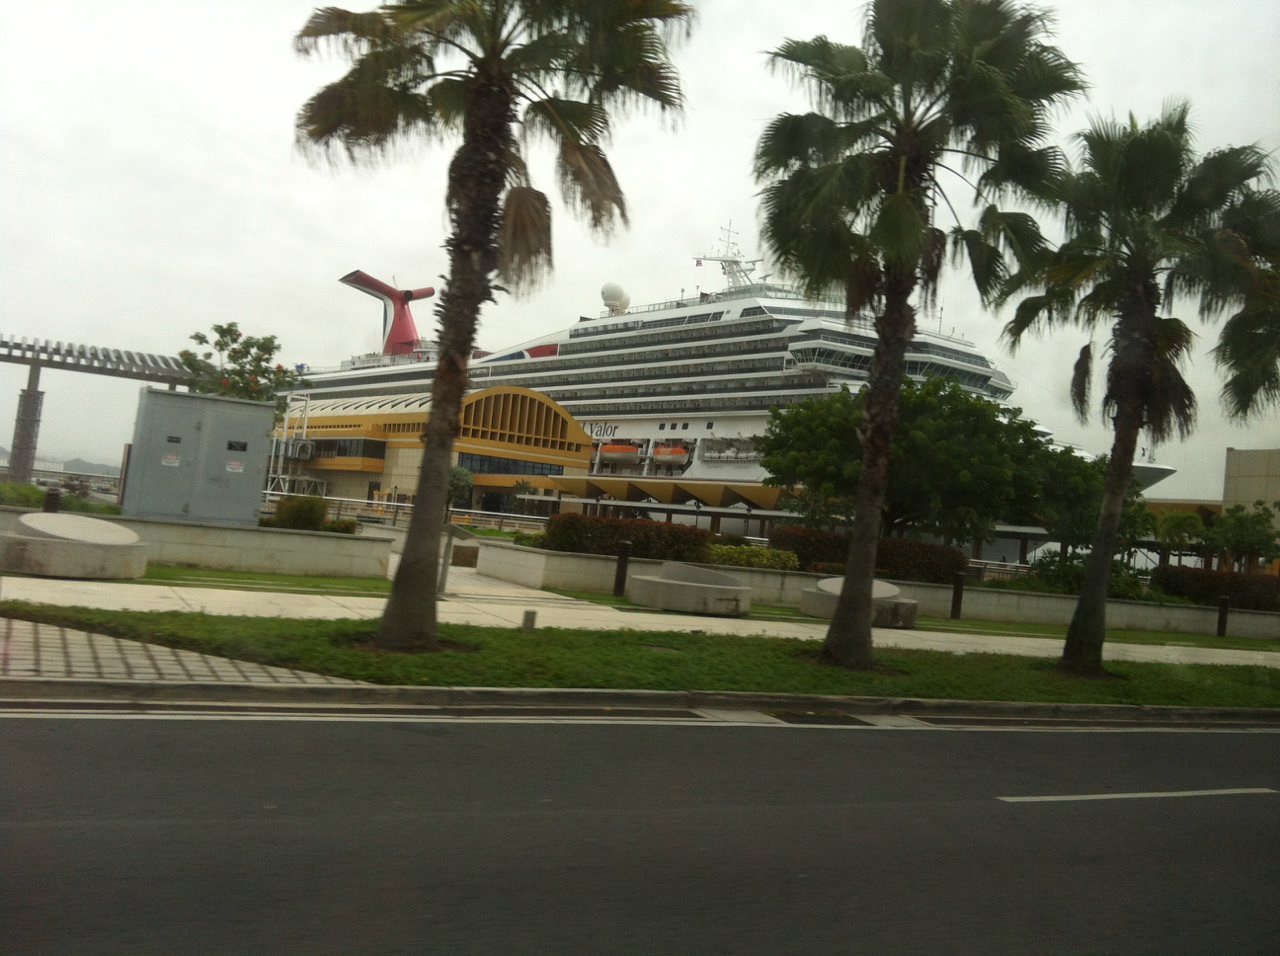 Cruiser in Puerto Rico